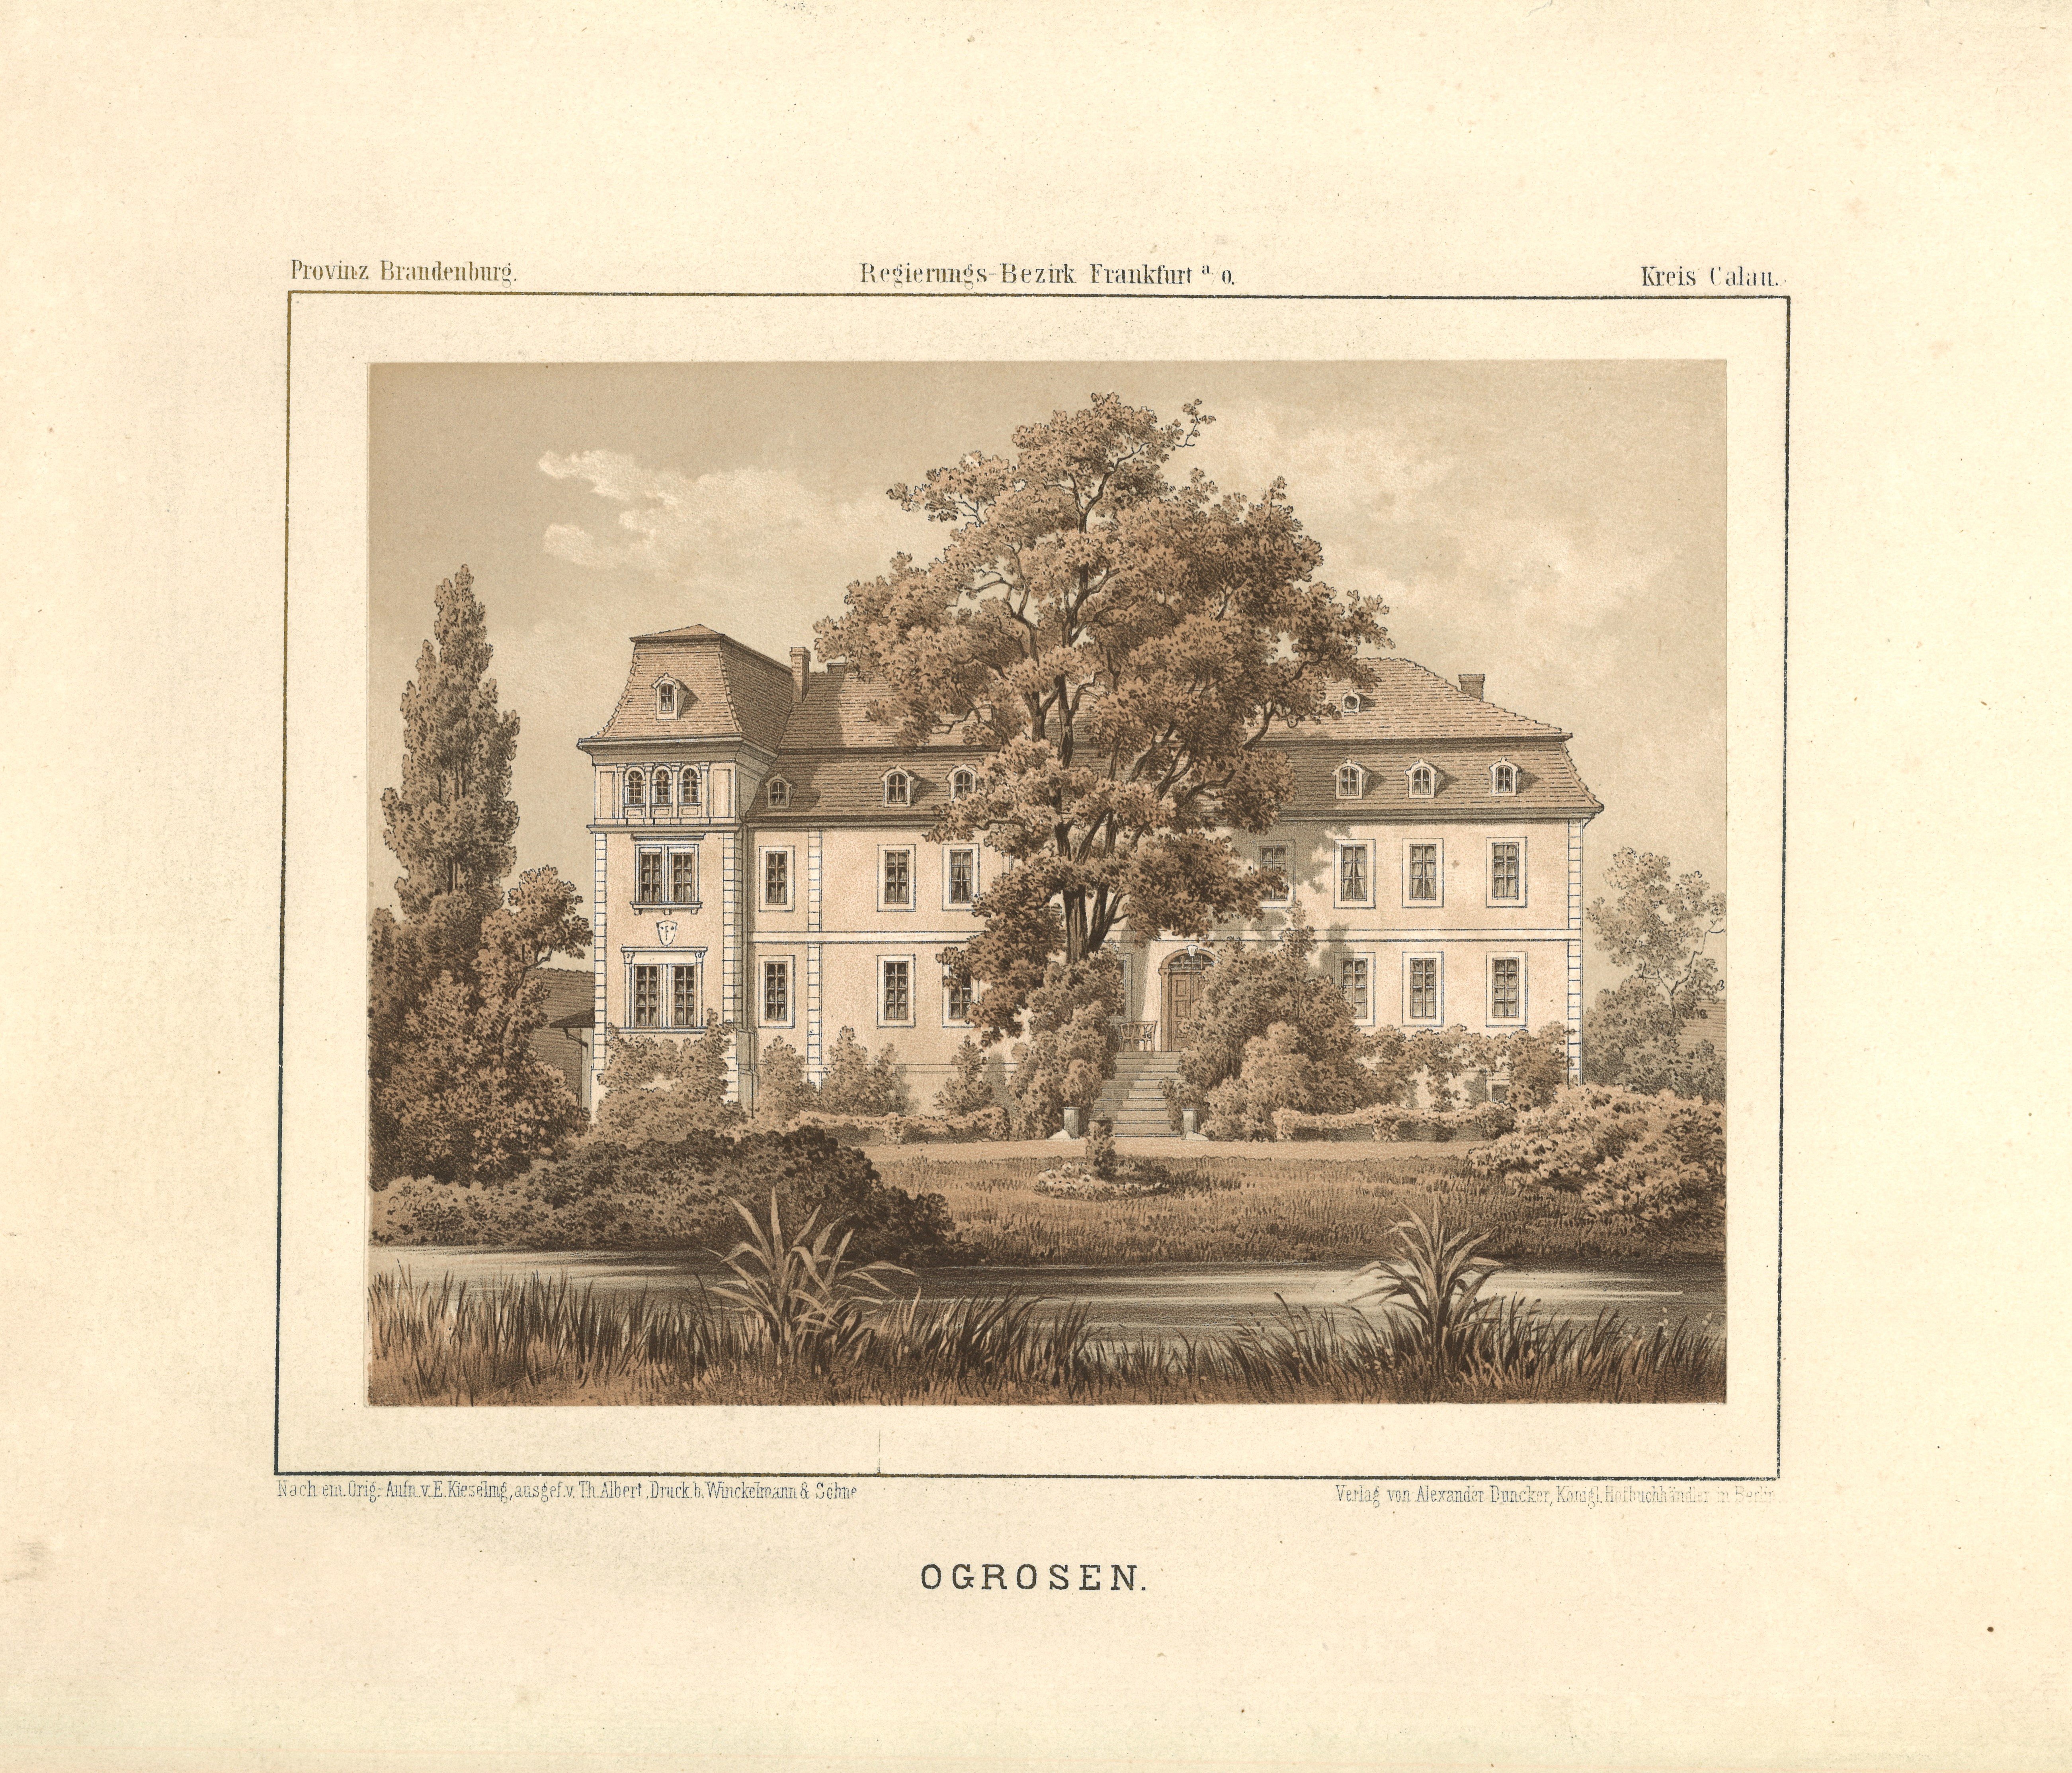 Ogrosen (Kr. Calau): Herrenhaus (Landesgeschichtliche Vereinigung für die Mark Brandenburg e.V., Archiv CC BY)